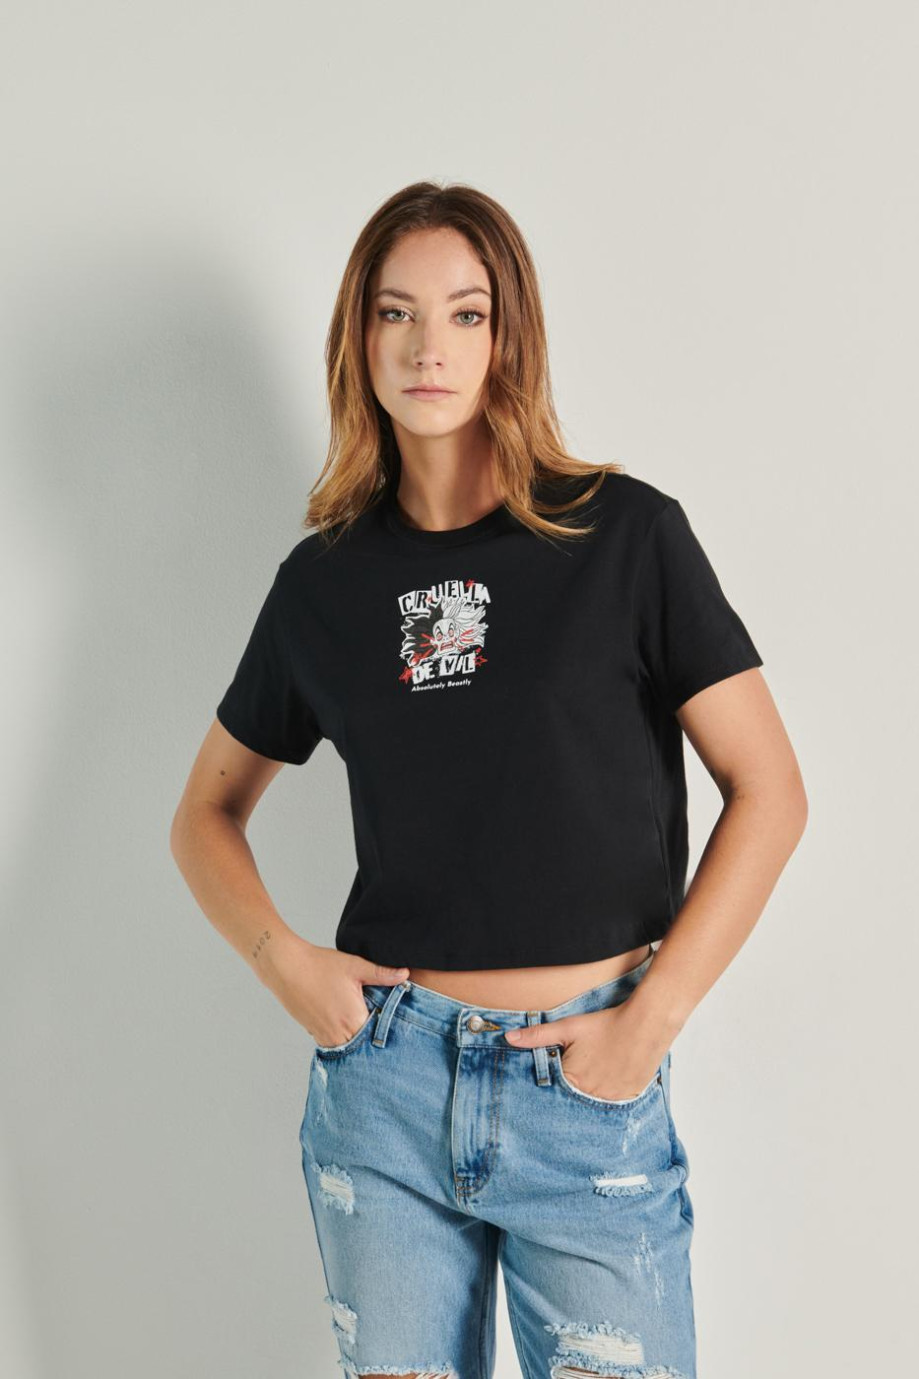 Camiseta negra crop top con arte de Cruella de Vil en frente